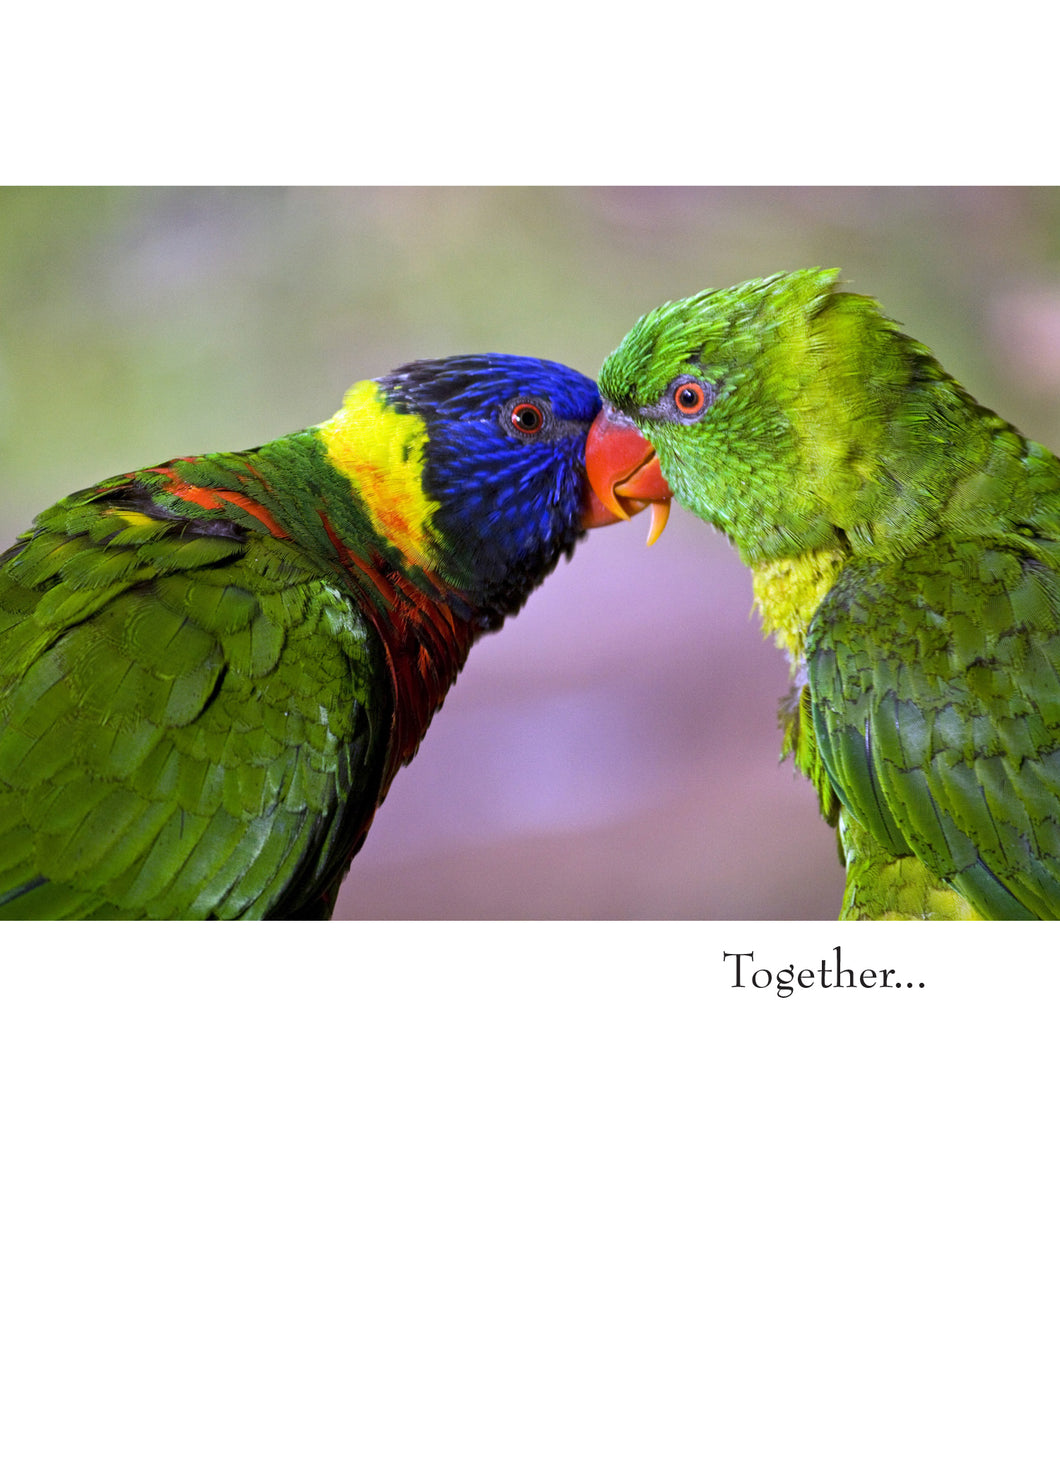 colour photo of two parrots